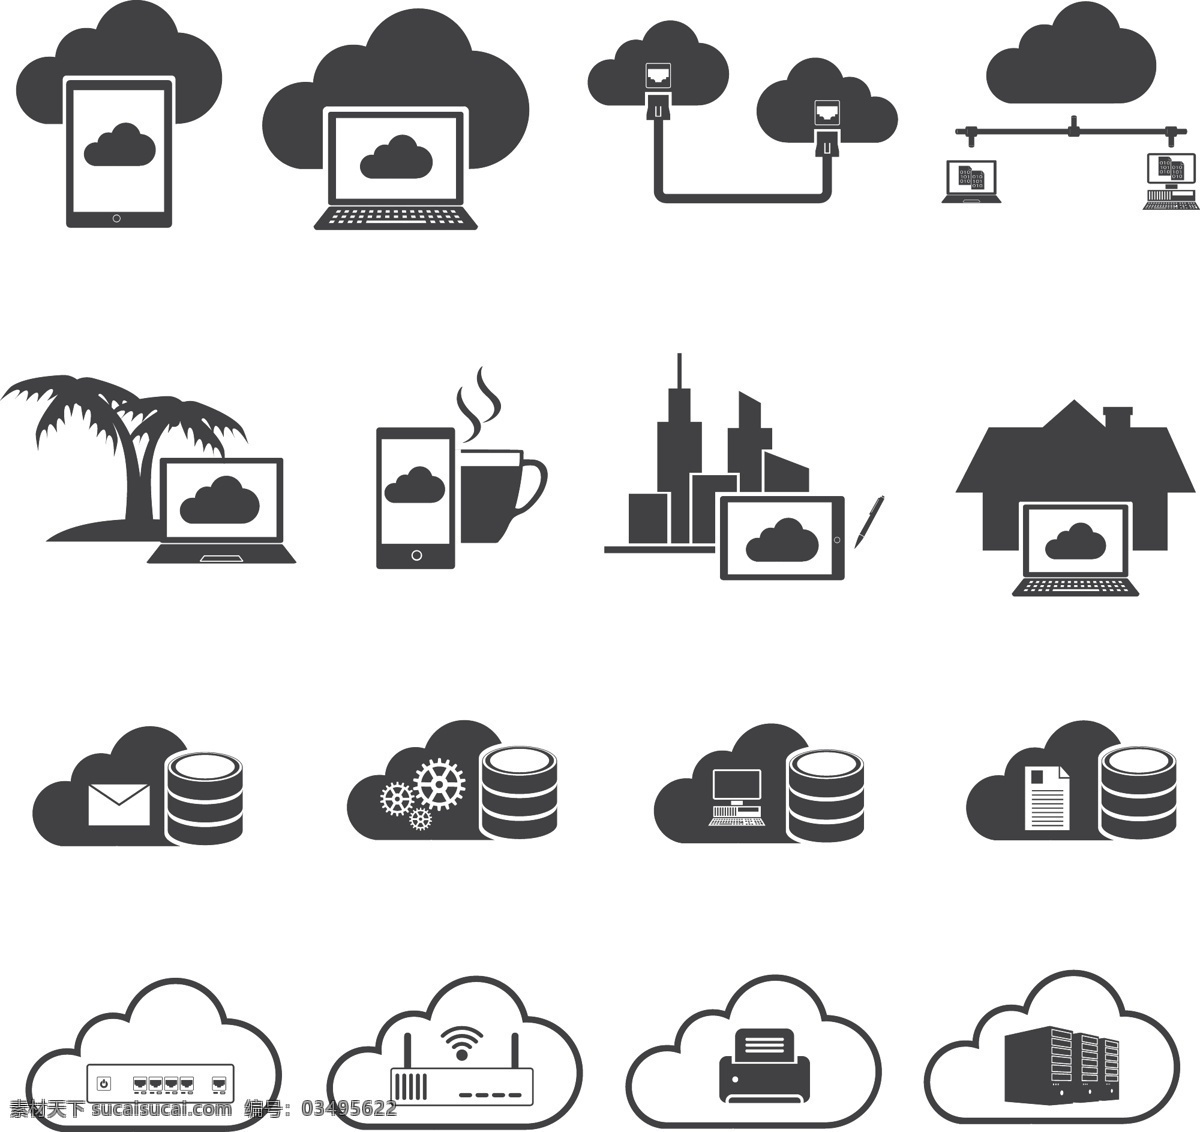 云图标 计算云图标 云 服务 图标 存储 云时代 云朵 电 网络 信号 通讯 矢量 标志 标签 logo 小图标 标识标志图标